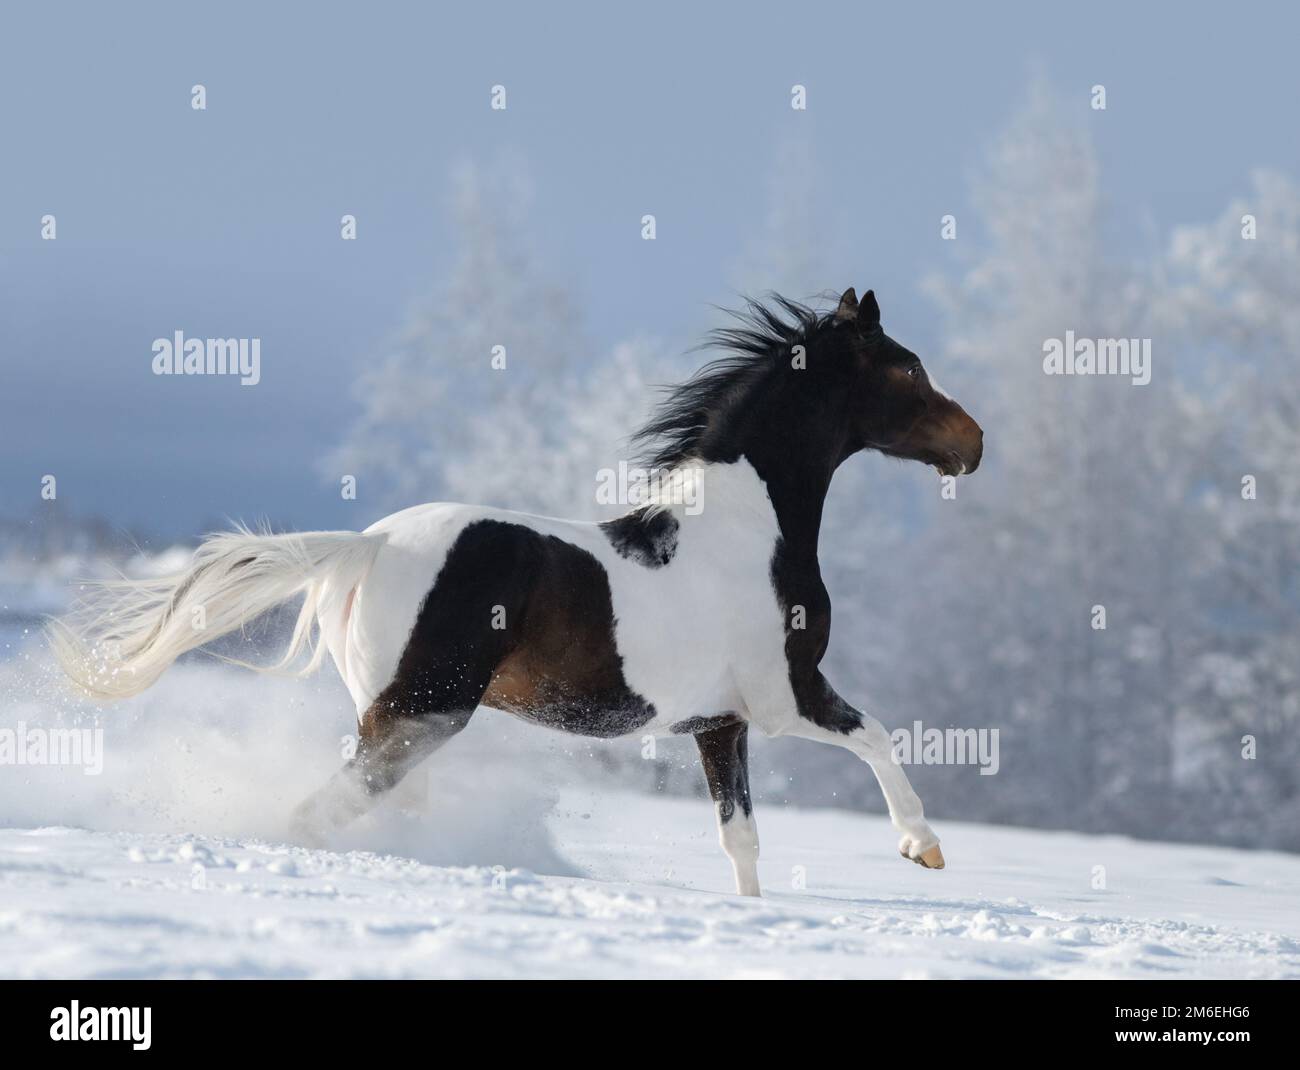 Un cheval américain peint galopant à travers la prairie enneigée d'hiver. Magnifique paysage d'hiver avec des arbres enneigés. Banque D'Images